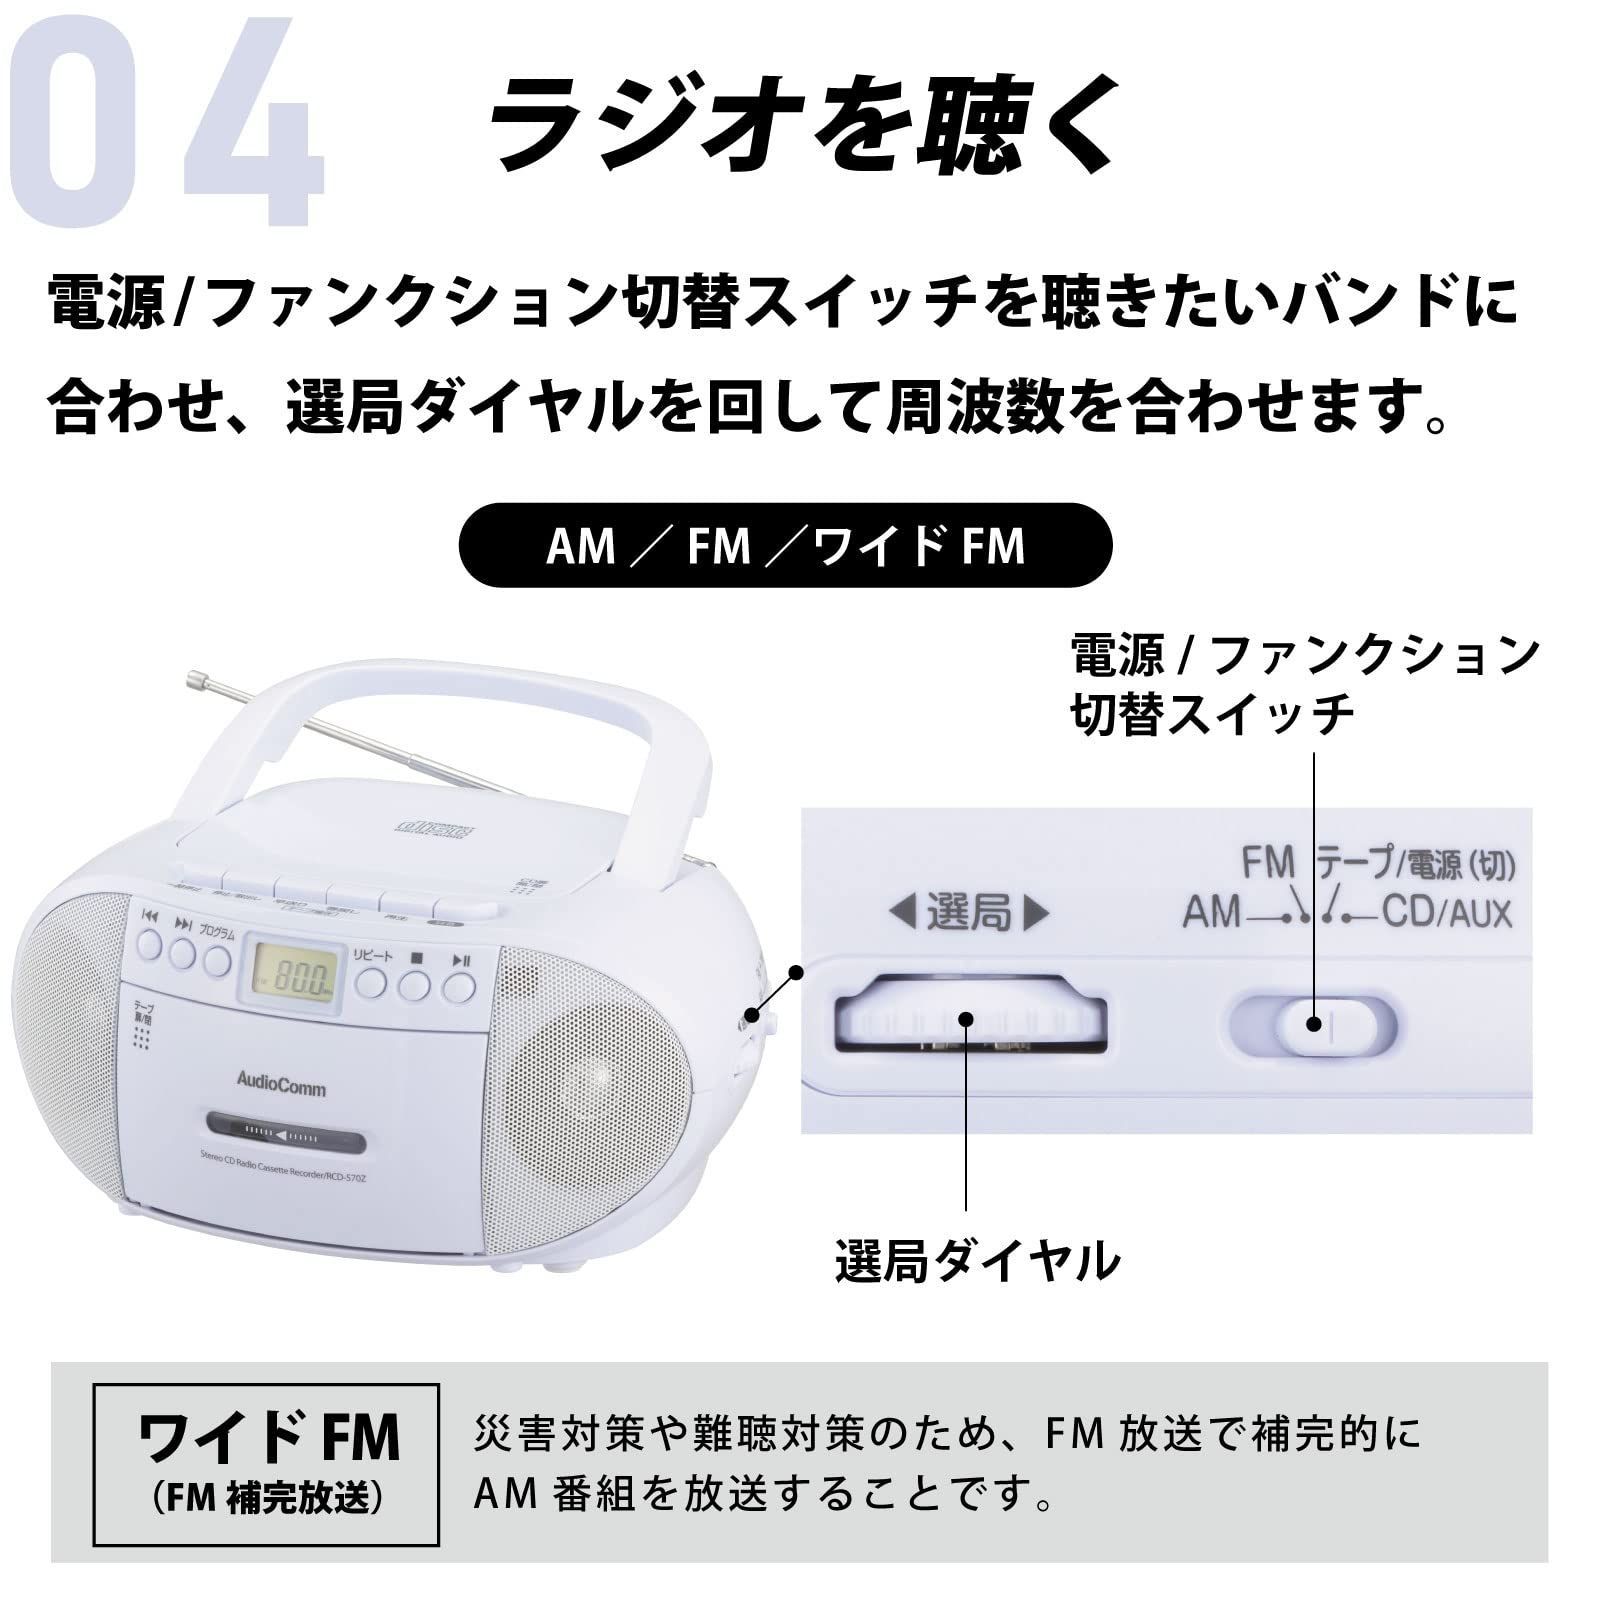 特価セールオーム電機 AudioComm CDラジオカセットレコーダー ホワイト